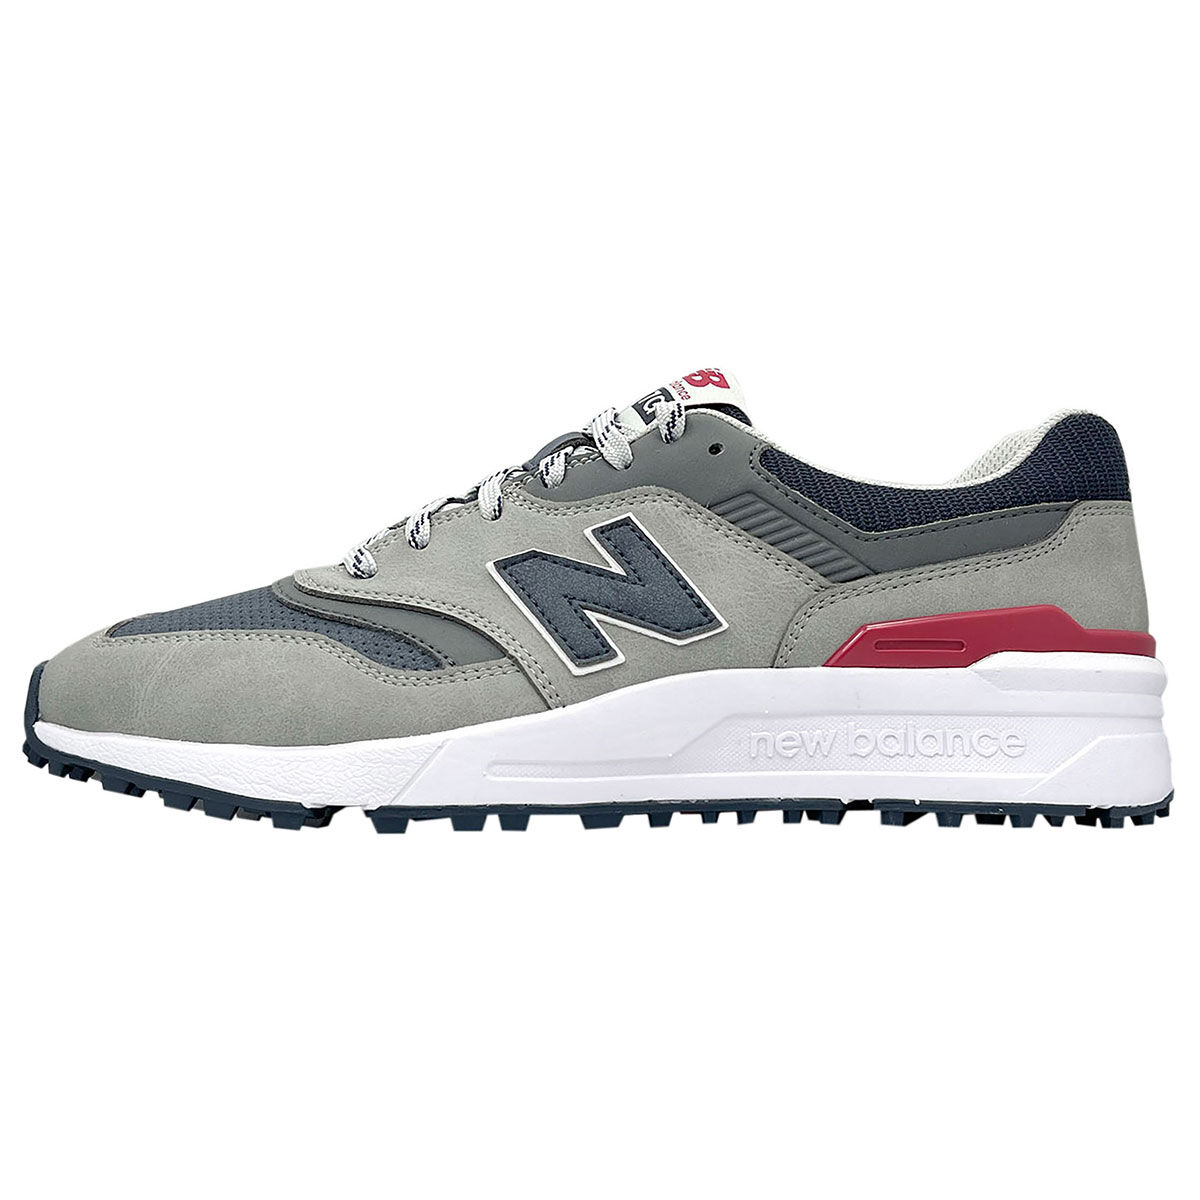 New Balance Men’s 997 Waterproof Spikeless Golf Shoes, Mens, Grey/navy, 7 | American Golf